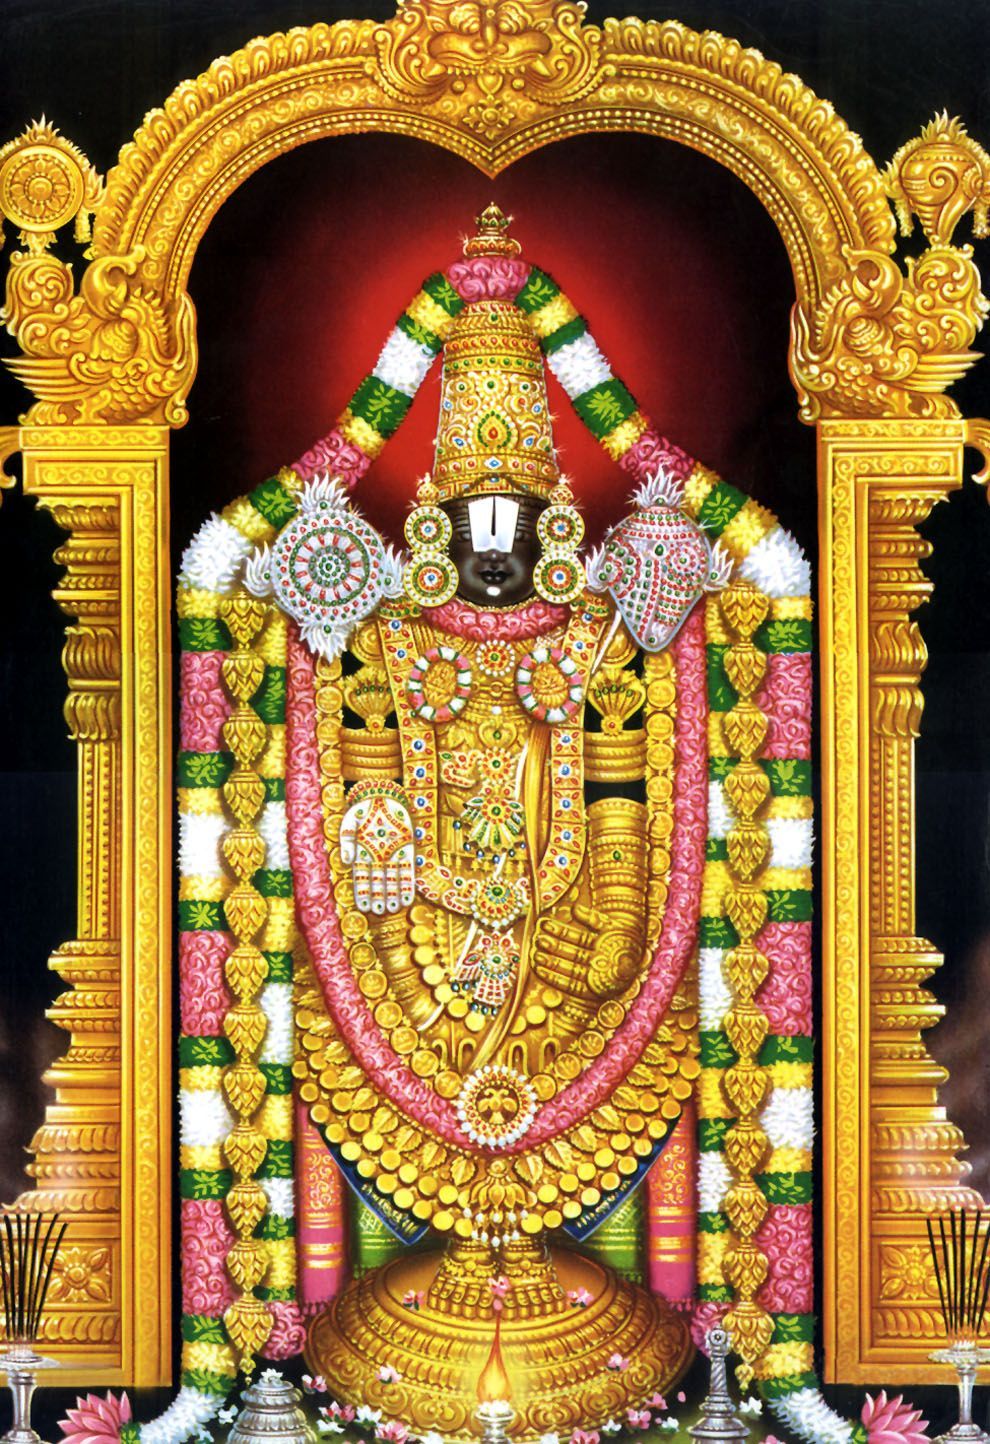 Tirupati Balaji Darshan packages from Delhi, VIP Darshan booking online, Tirupati rail. Lord ganesha paintings, Tirumala venkateswara temple, Venkateswara temple